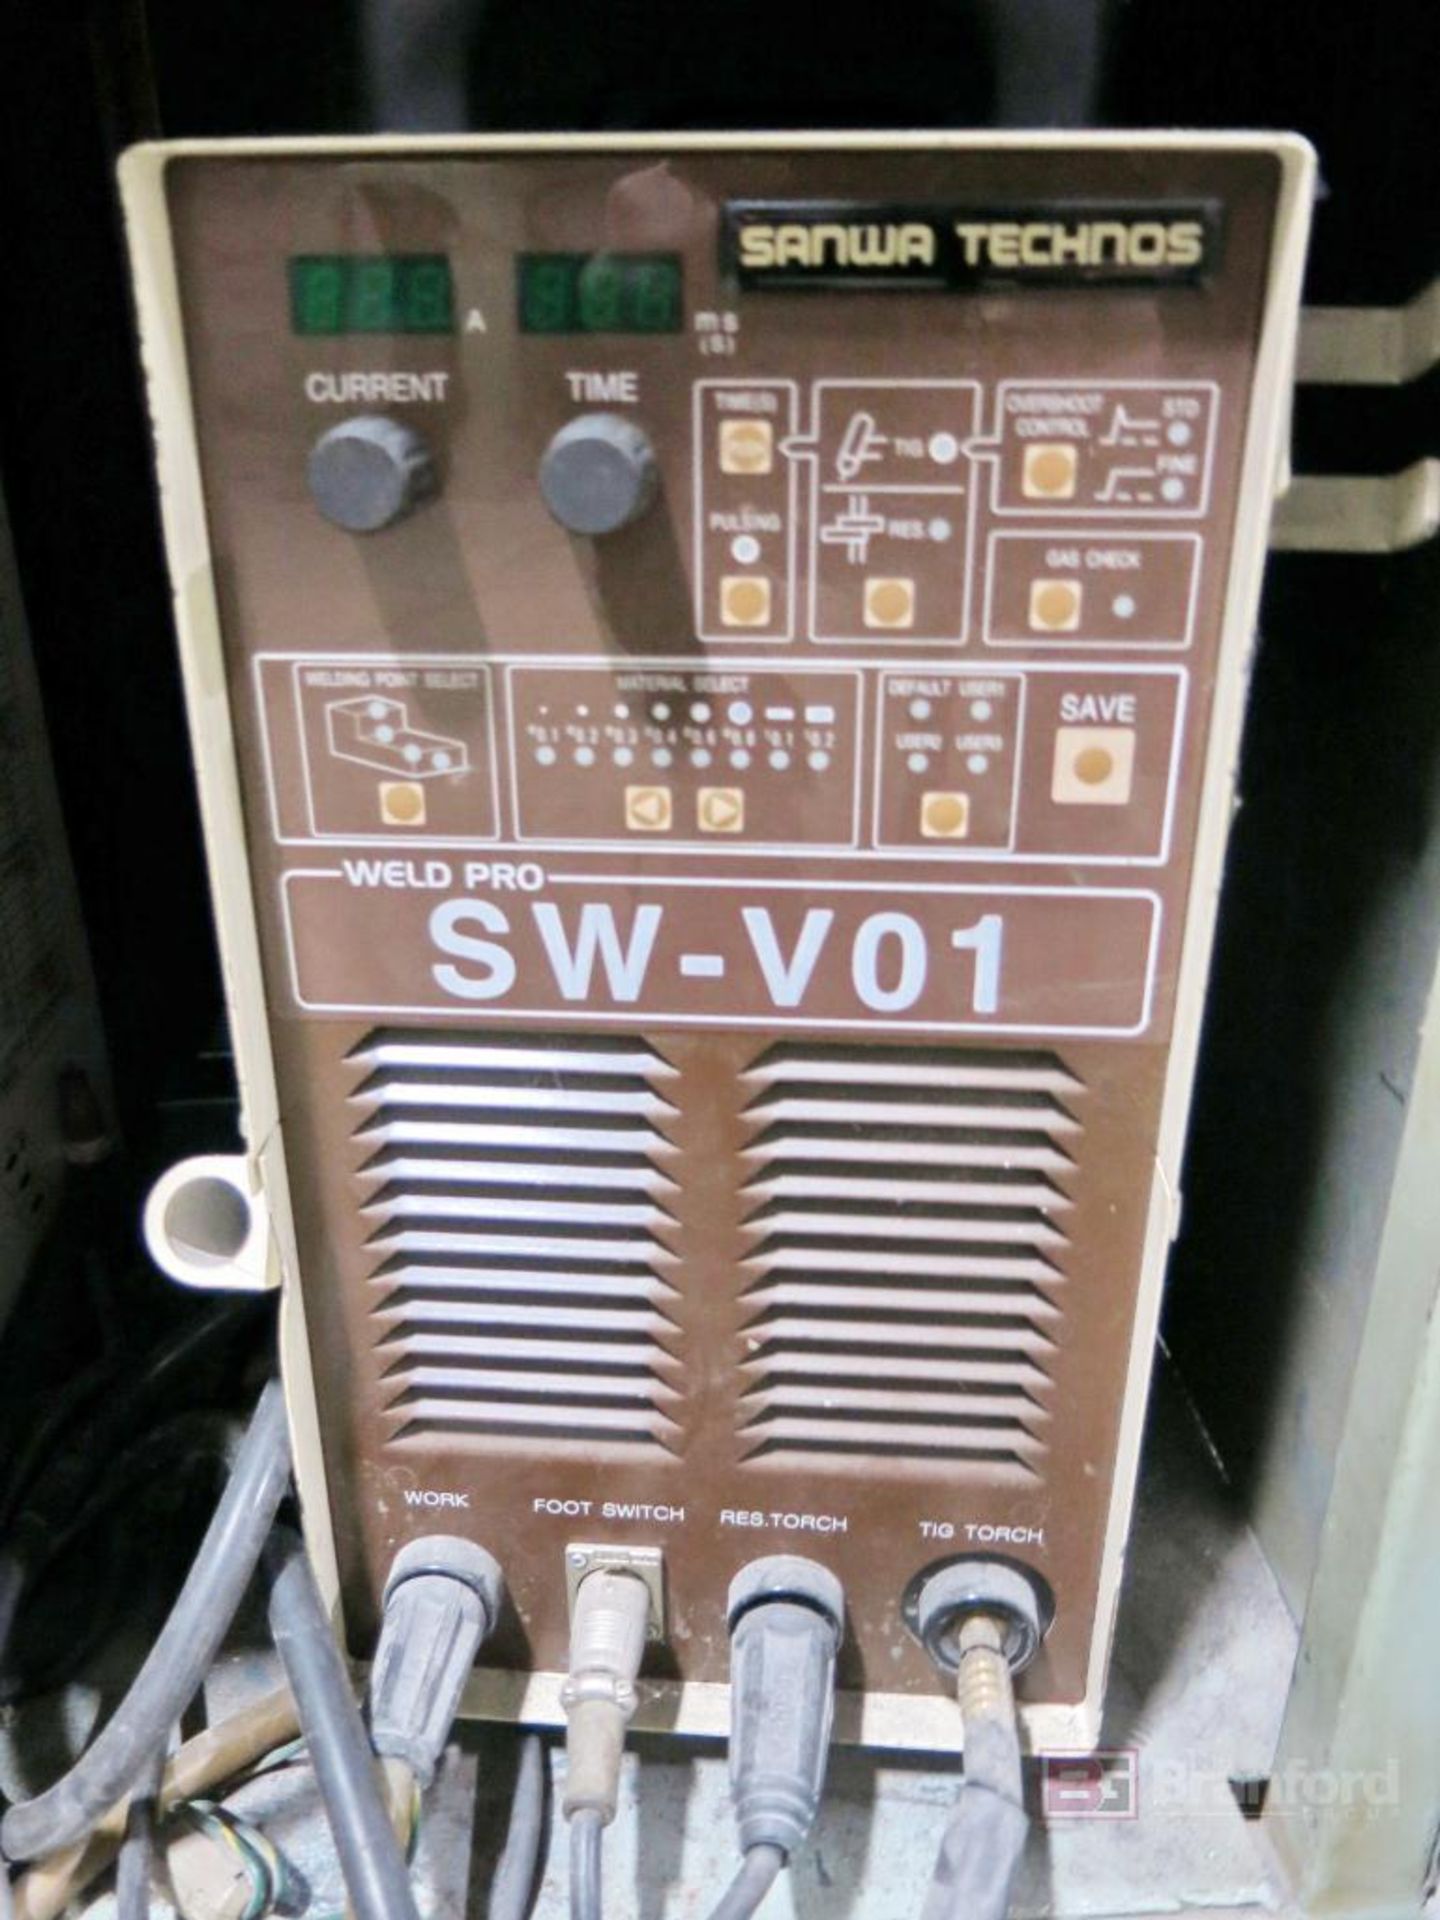 Sanwa Technos Model SW-V01 Well Pro Welder - Image 2 of 4